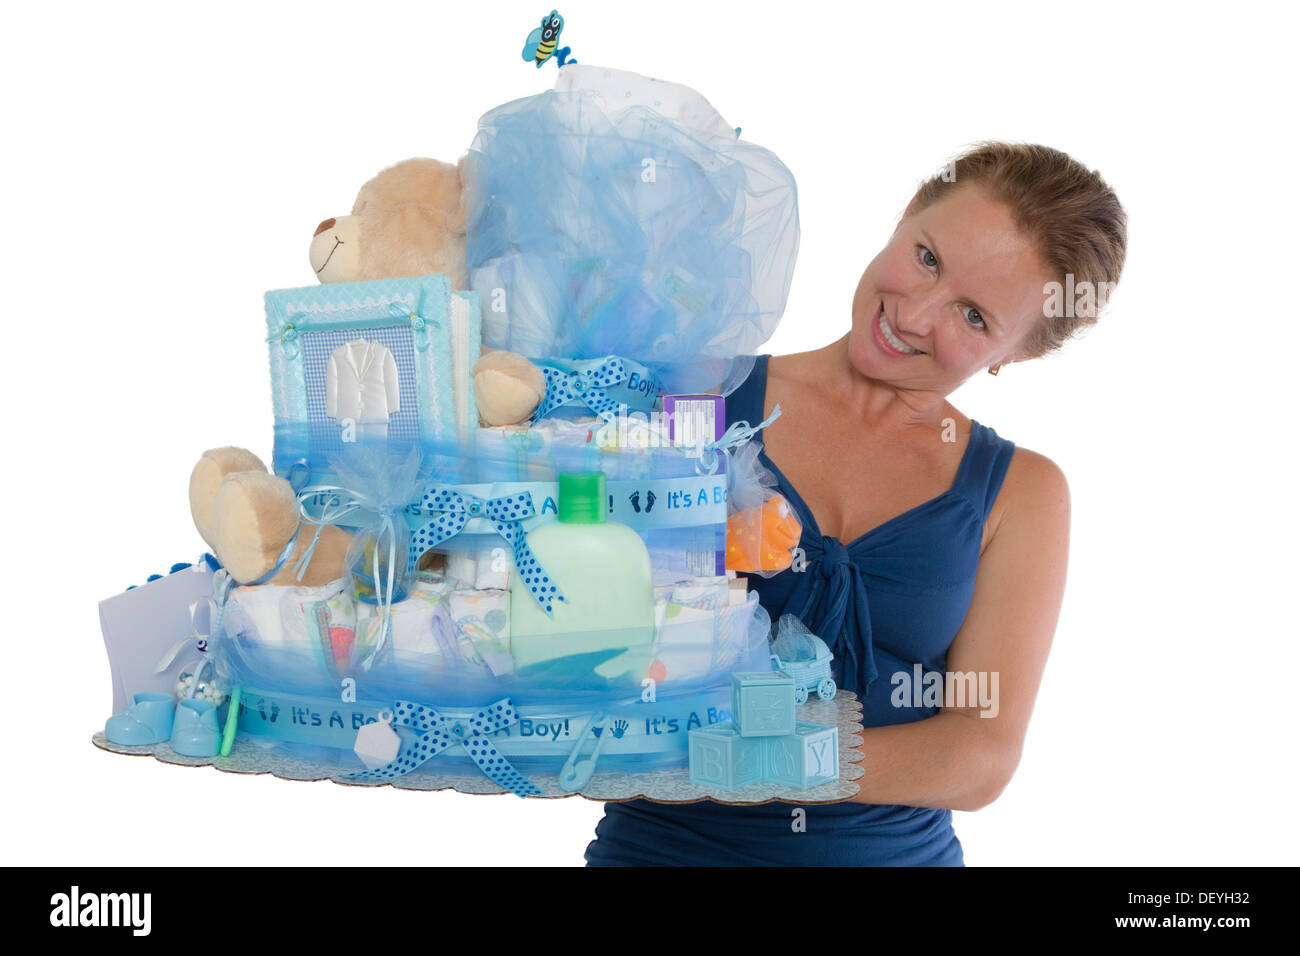 Hübsche Dame präsentiert eine Babywindel Kuchen mit verschiedenen Produkten für die werdende Familie und ihre junge, isoliert auf einem weißen Backg Stockfoto